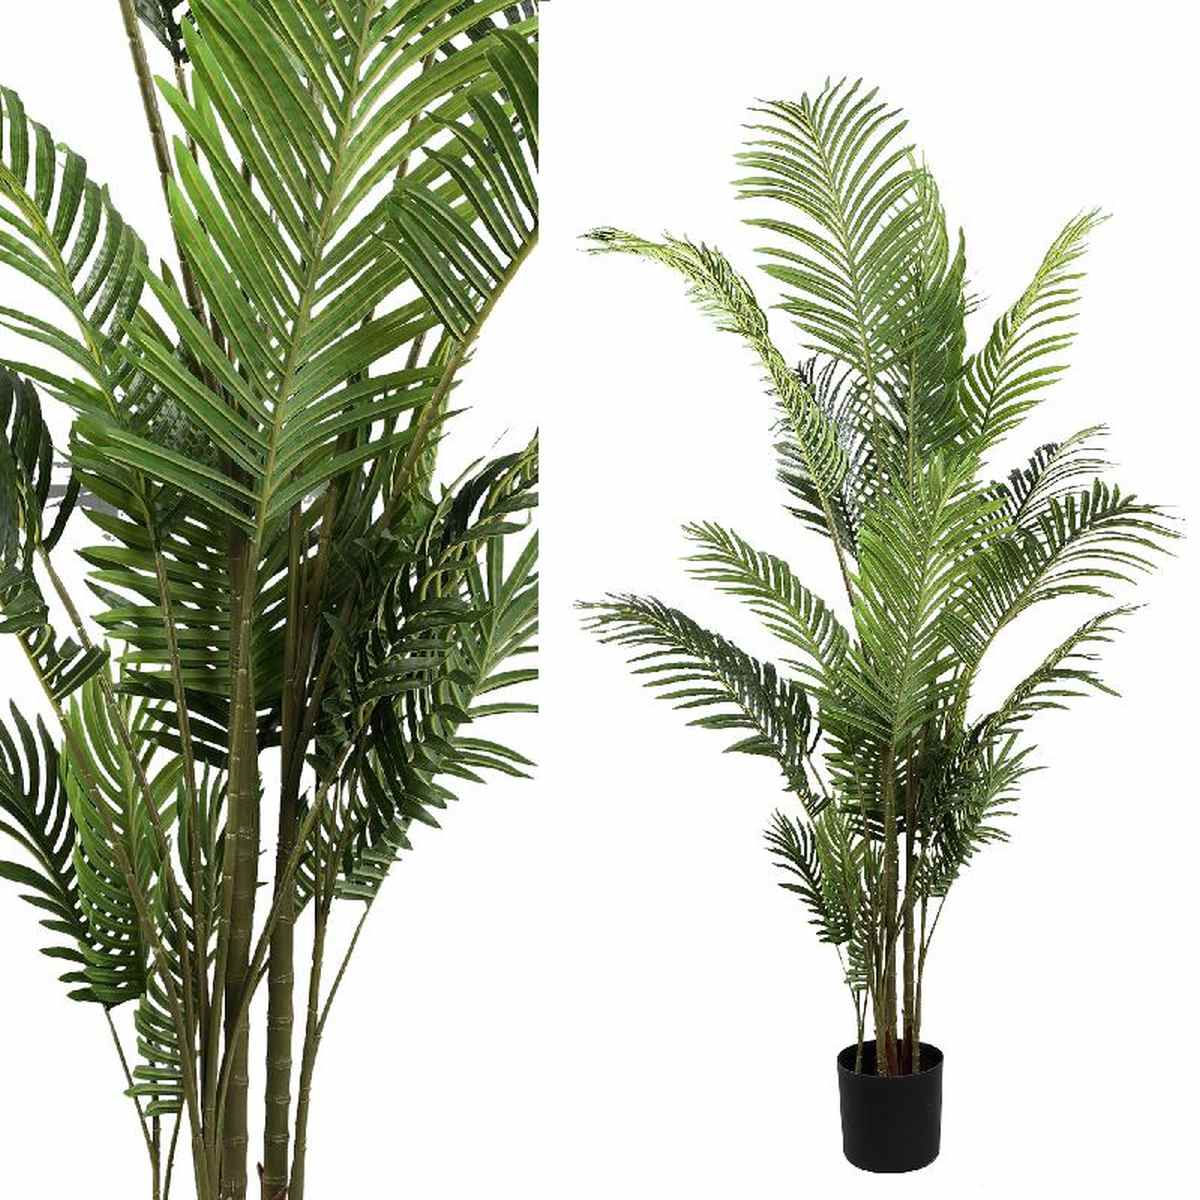 Ptmd palm plante artificiel - 150 x 106 x 200 cm - pot en plastique - vert